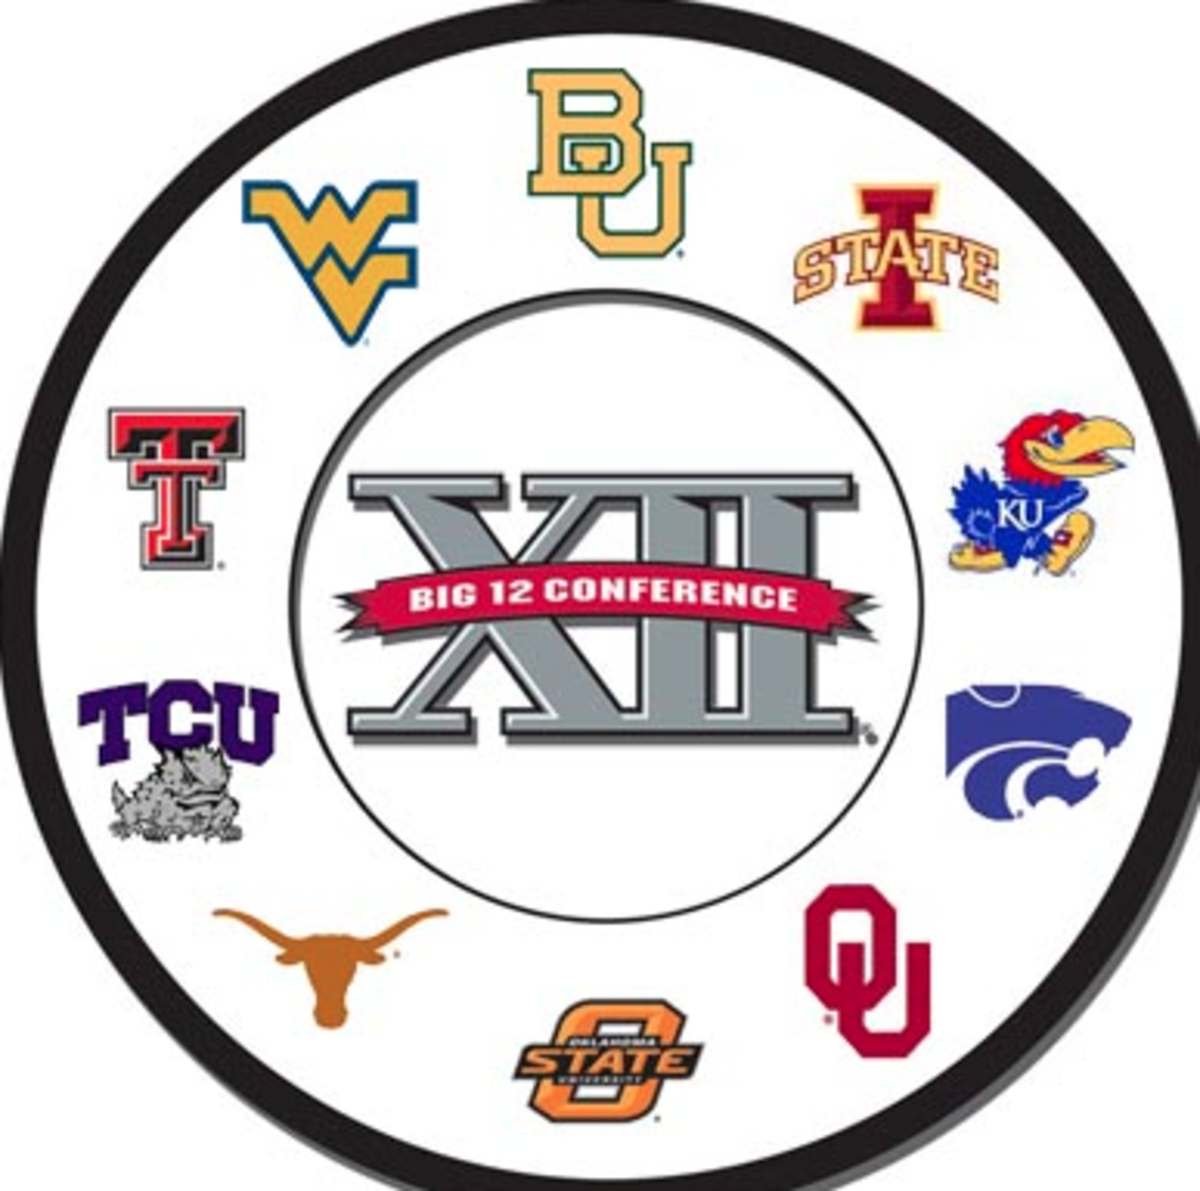 Big 12 Team logos around the center big 12 logo.